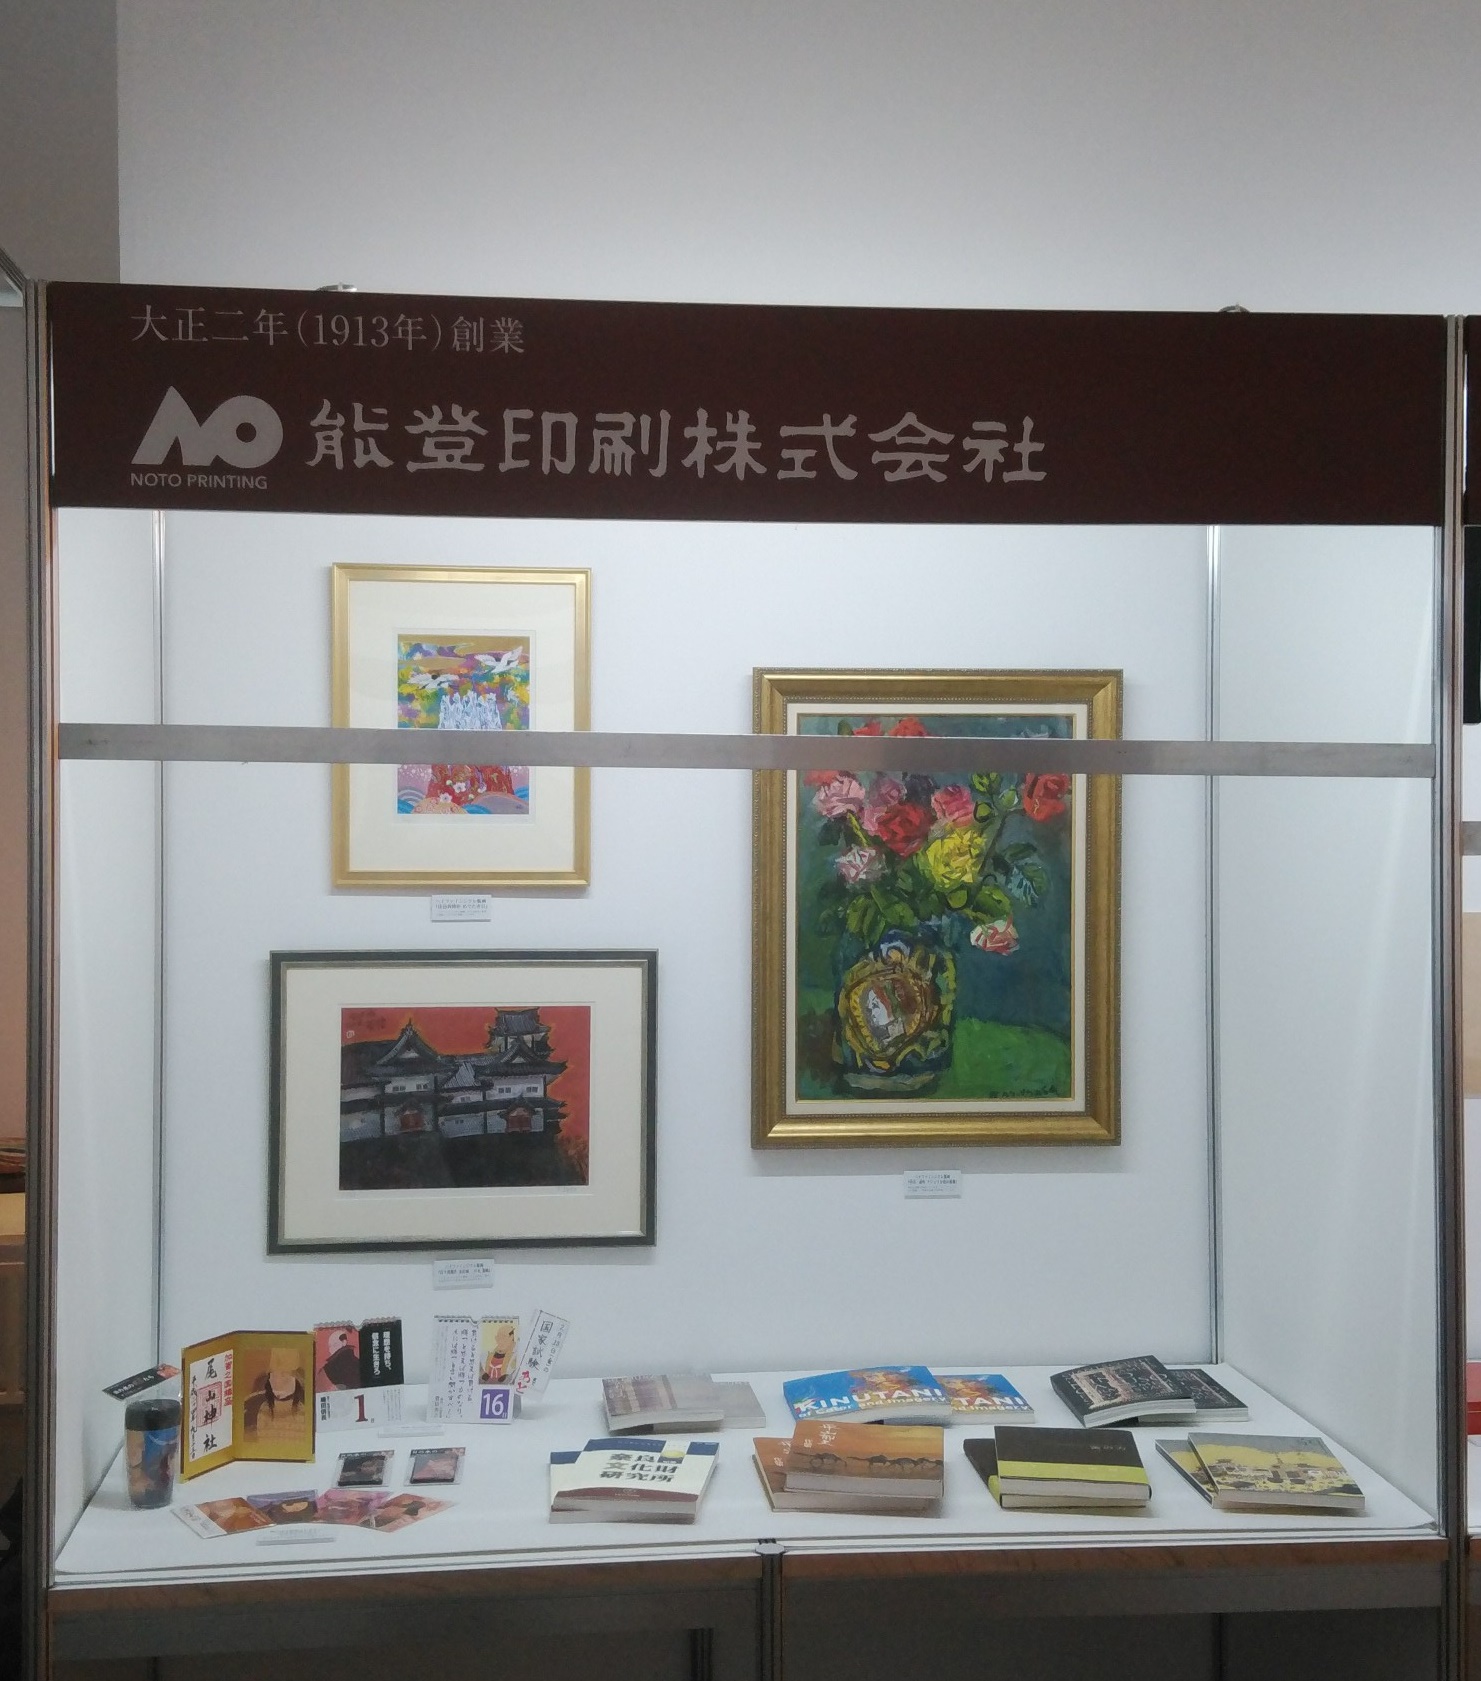 21世紀美術館「金澤老舗百年展」に出展21世紀美術館「金澤老舗百年展」